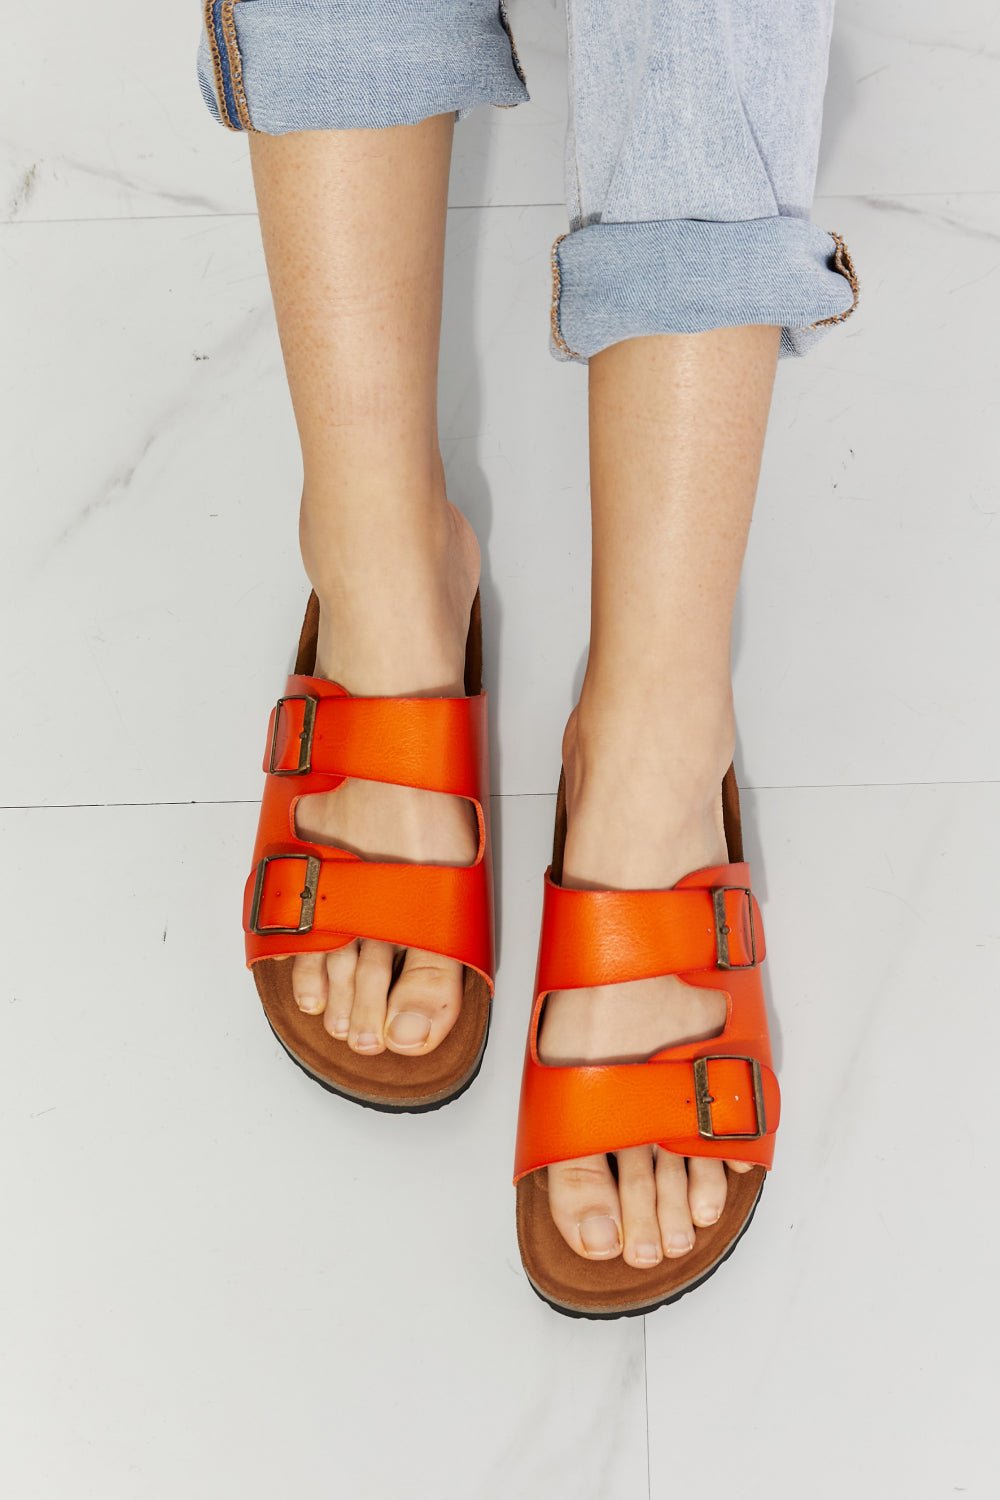 MMShoes Feeling Alive Double Banded Slide Sandals in Orange - EMMY